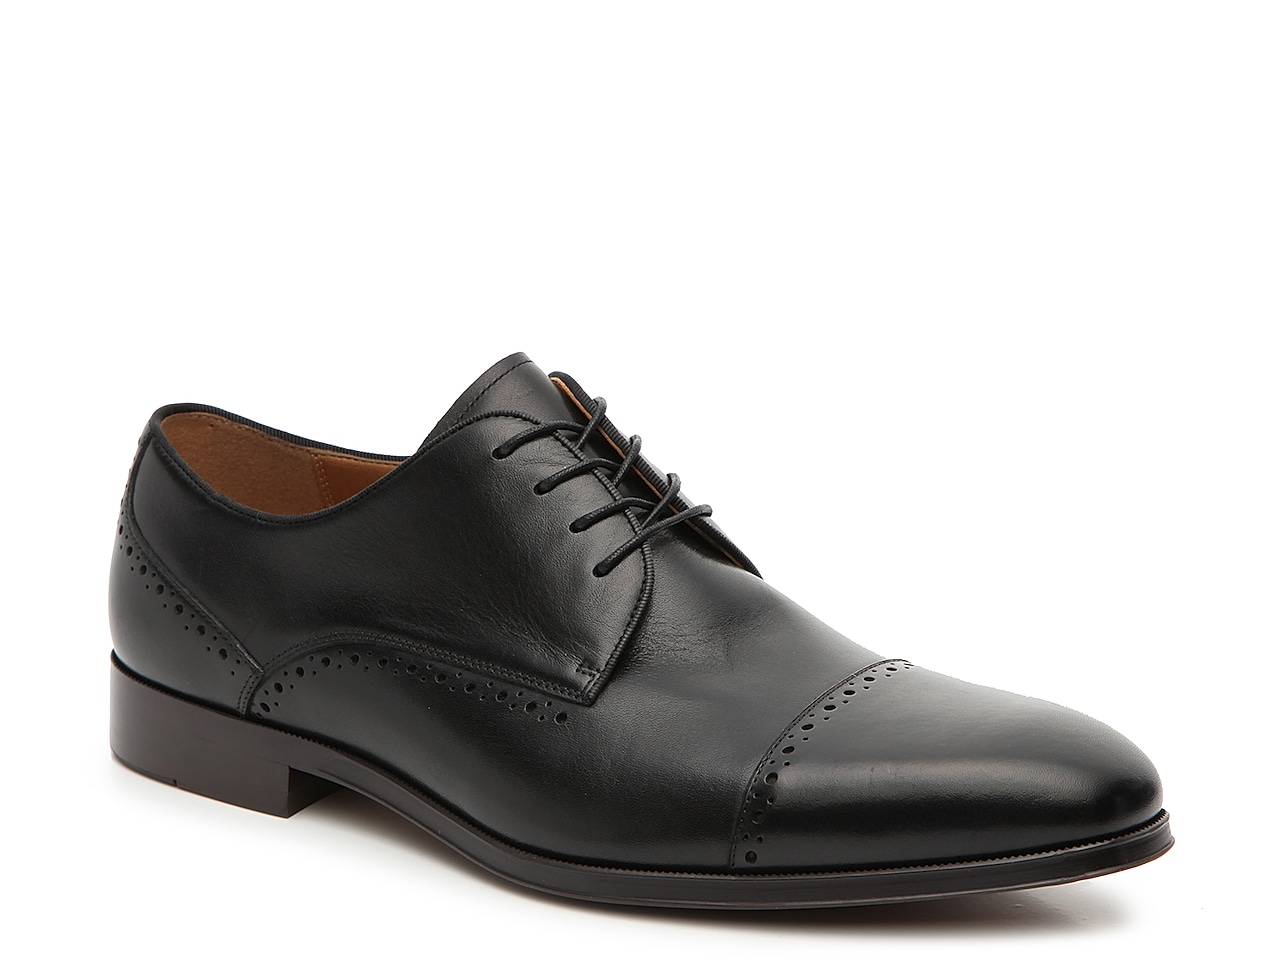 Aldo Alen Cap Toe Oxford Men's Shoes | DSW